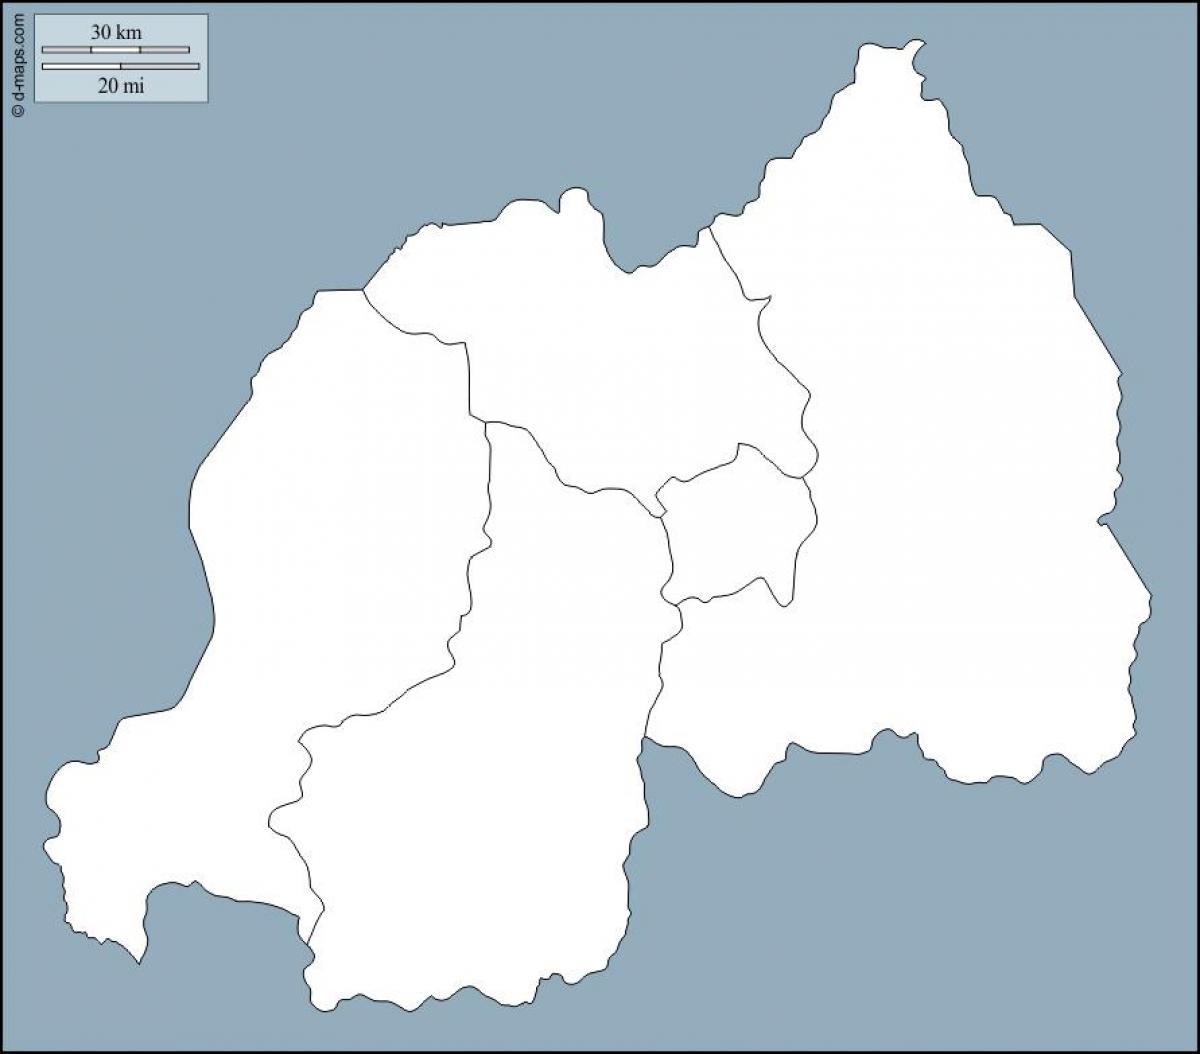 Ruanda contorno do mapa